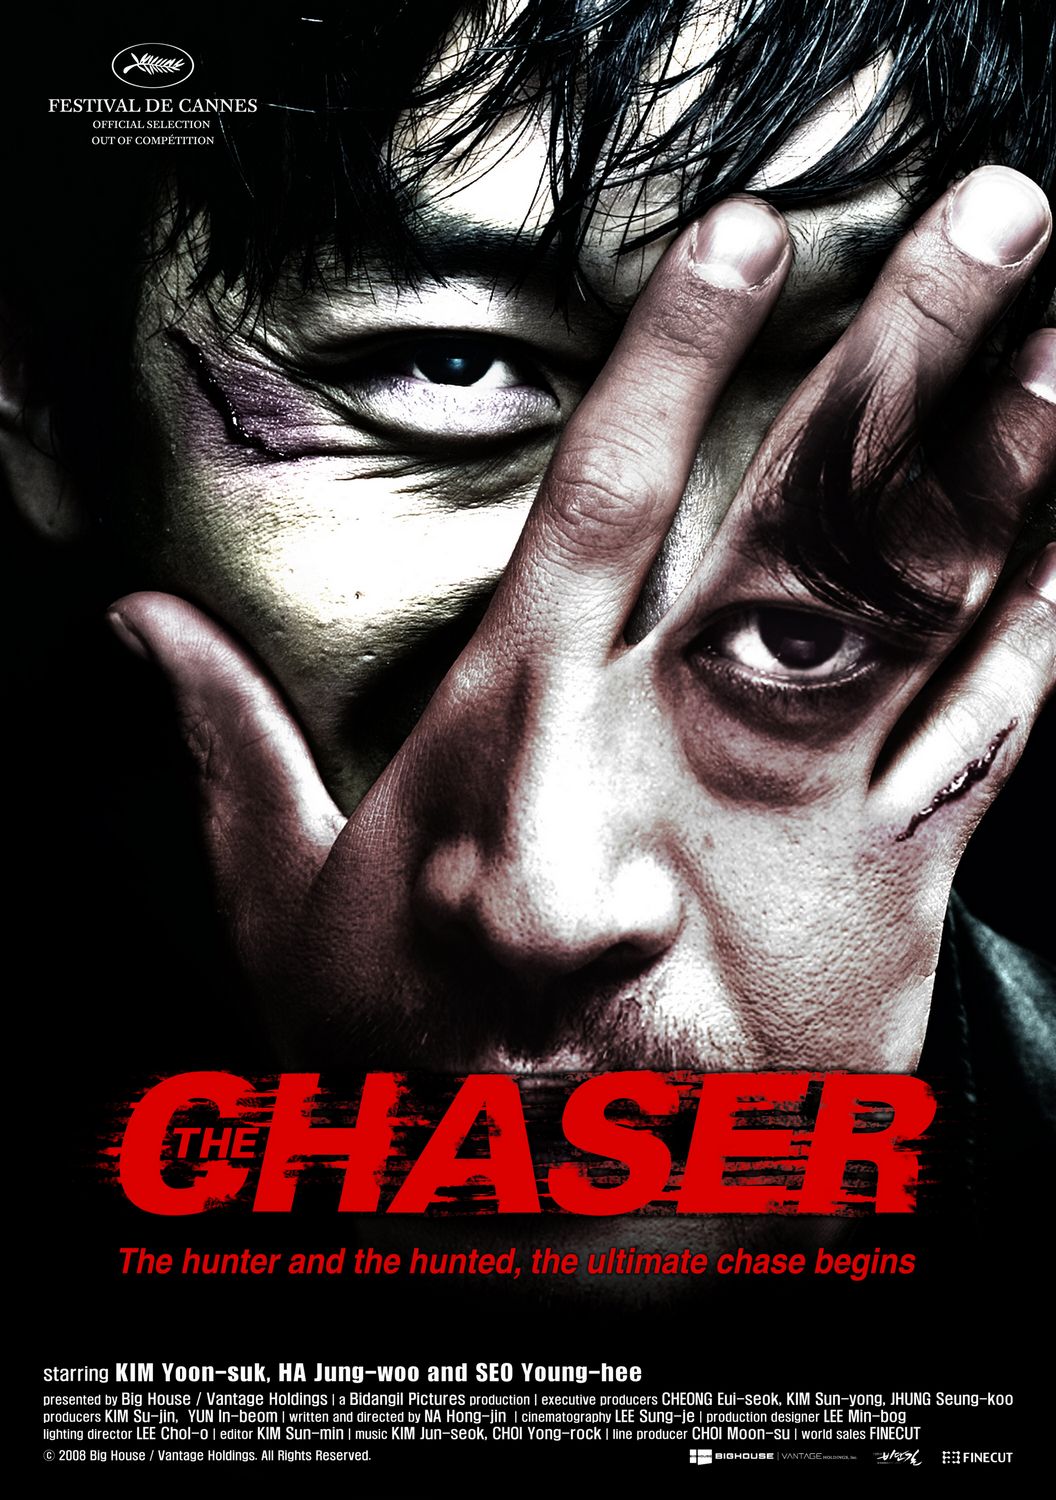 The Chaser (2008) โหด ดิบ ไล่ ล่า